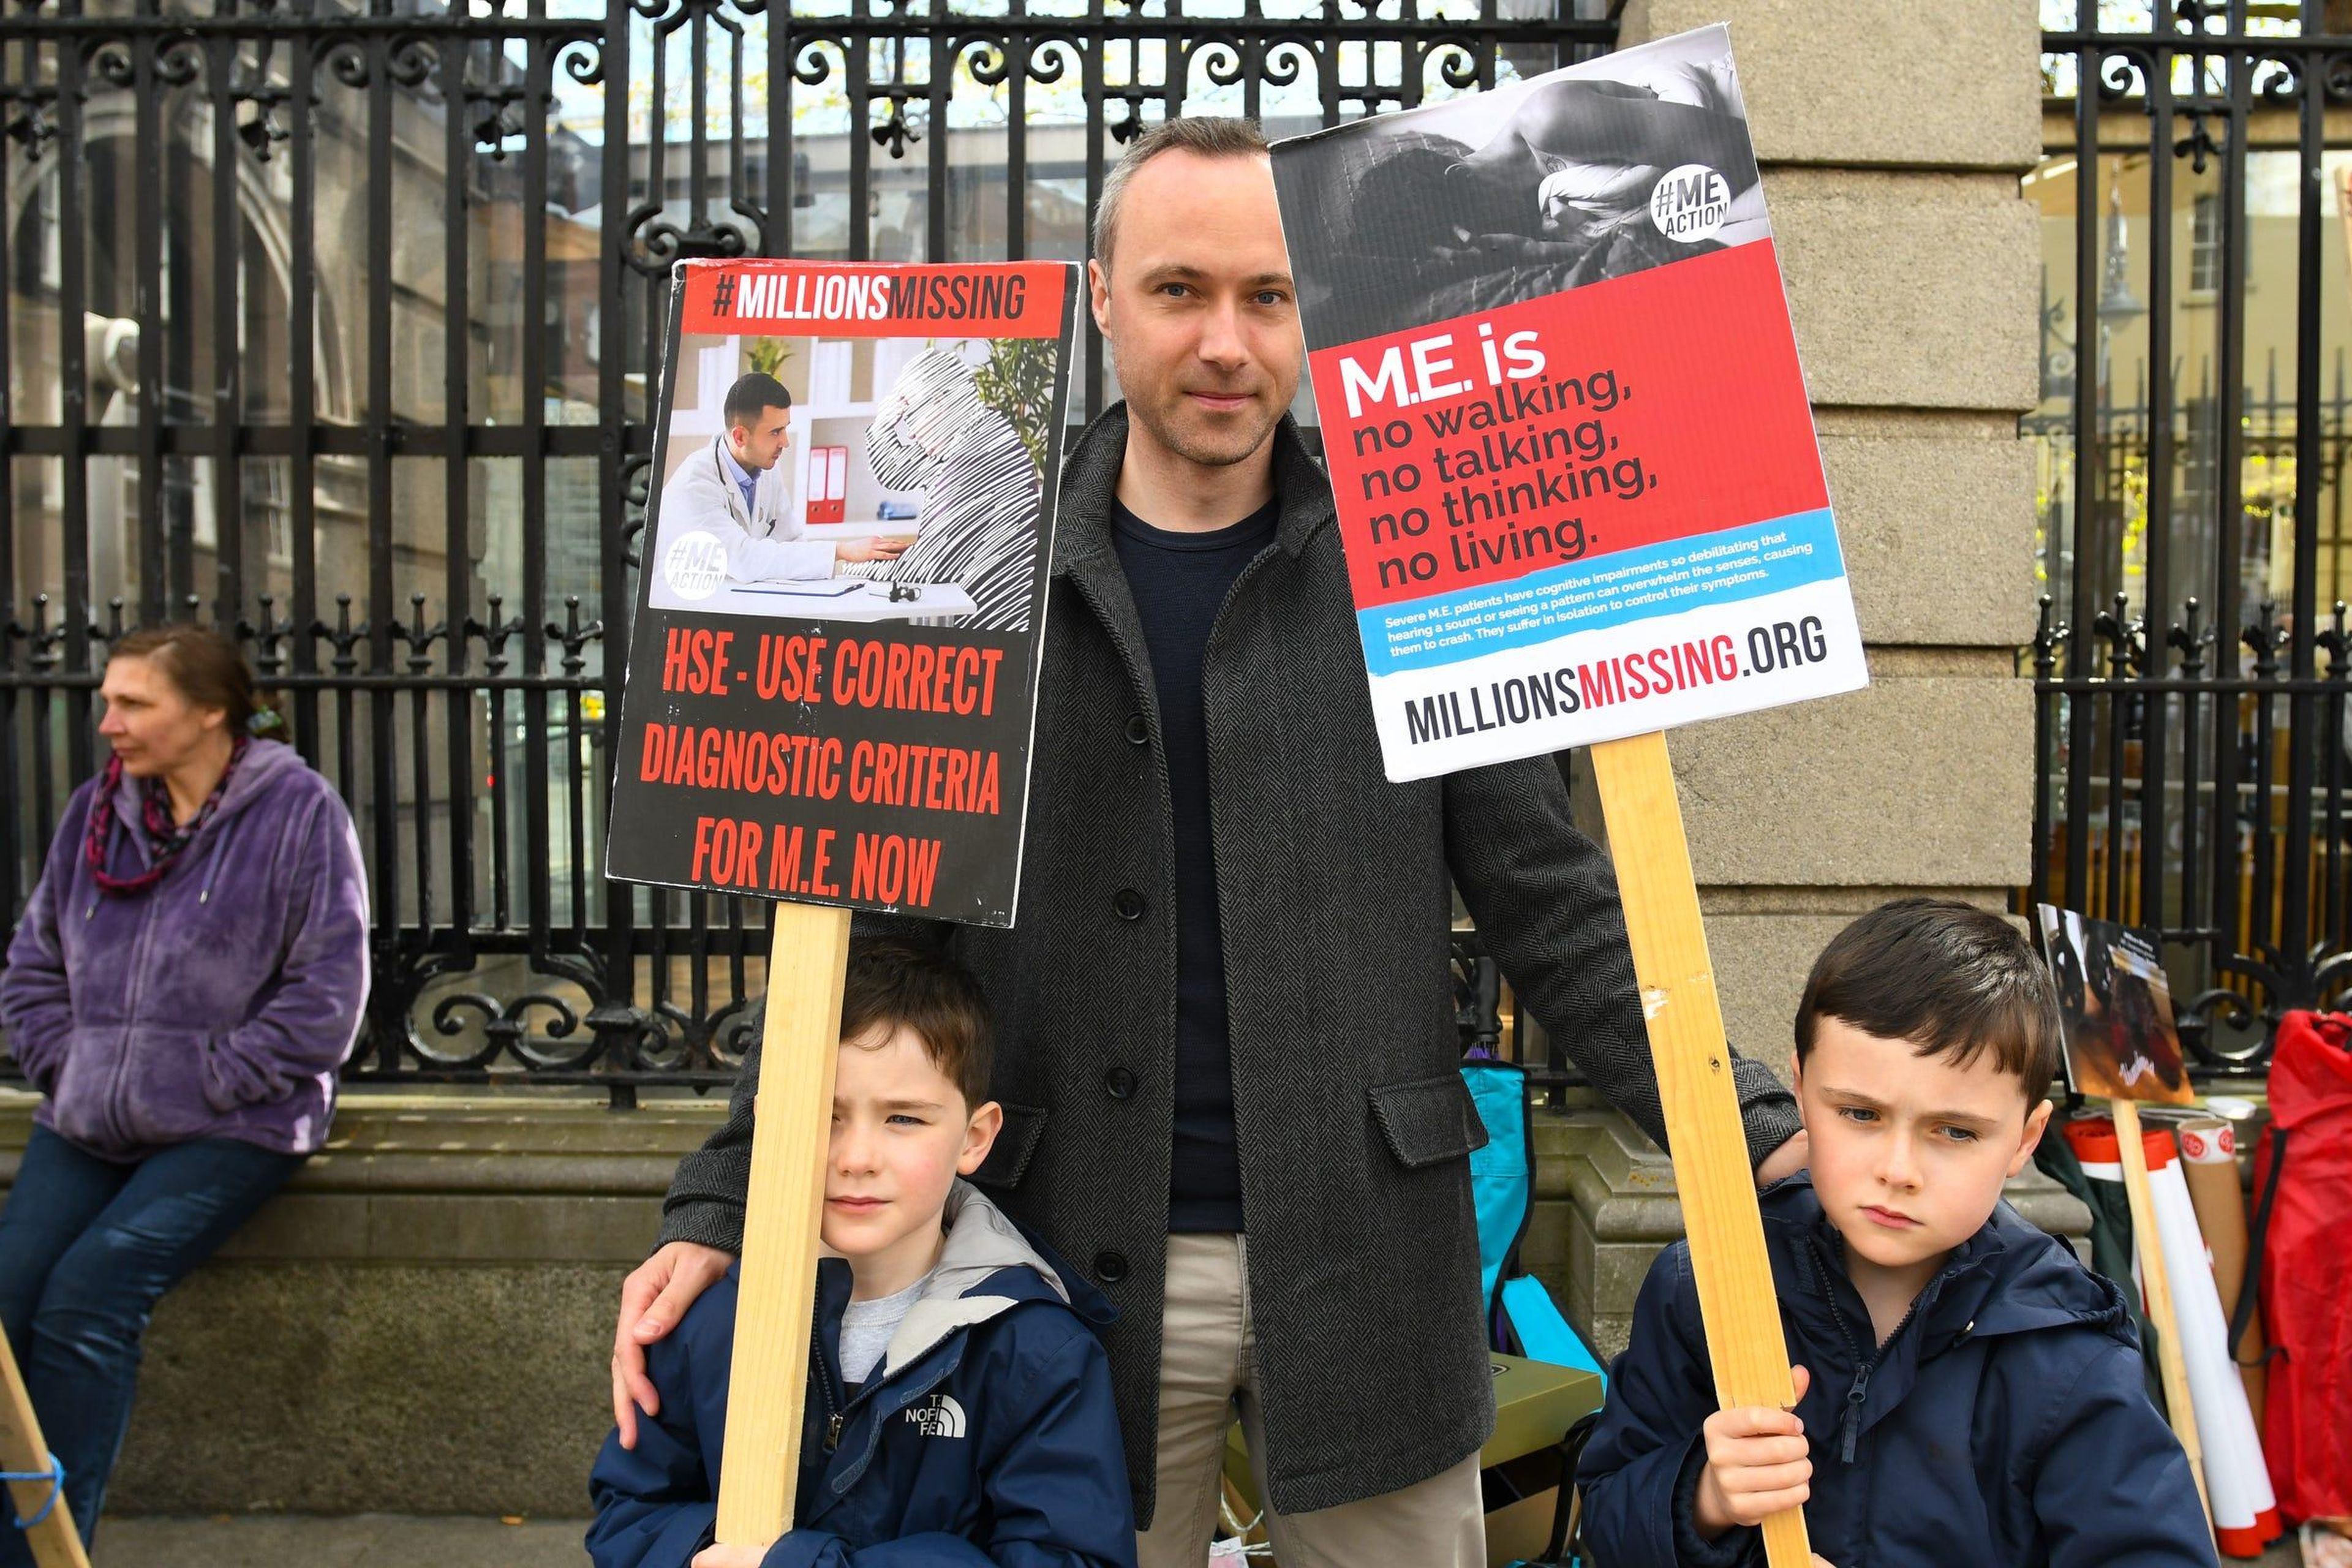 Los activistas de #MillionsMissing, un movimiento para concienciar sobre el síndrome de fatiga crónica, en Dublín, Irlanda, el 10 de mayo de 2018.